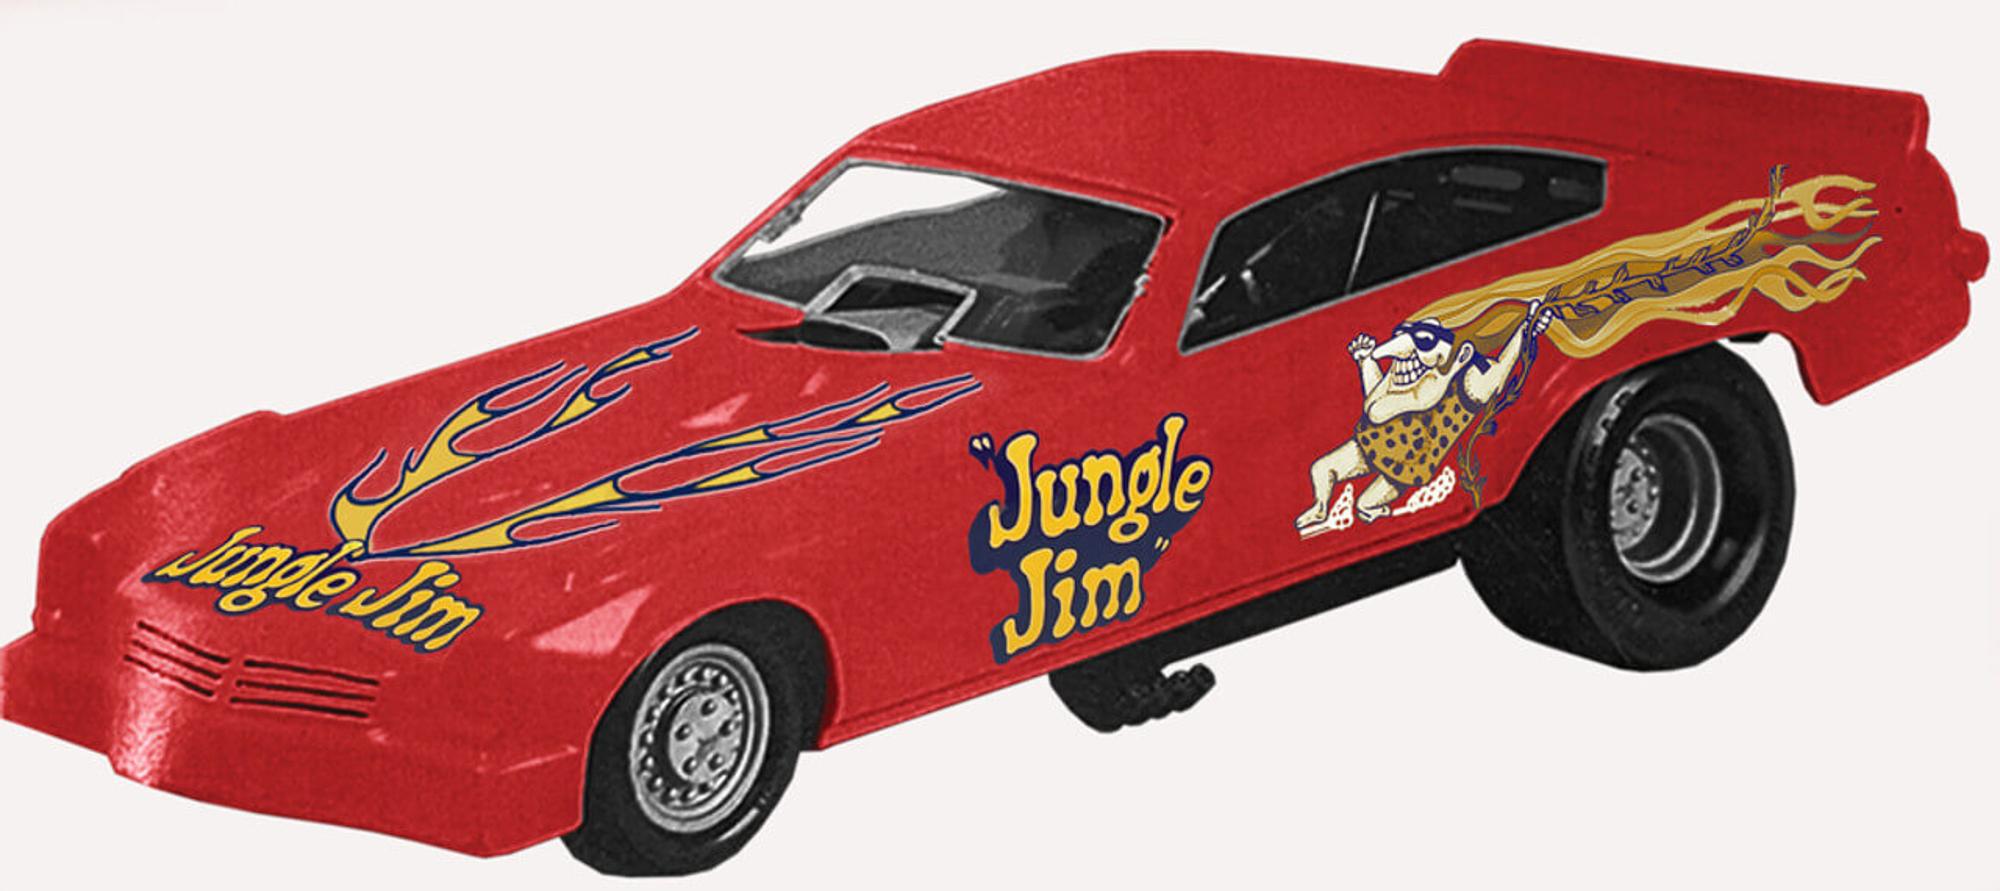 Atlantis 1/32 1974 Jungle Jim Funny Car Snap Model Kit